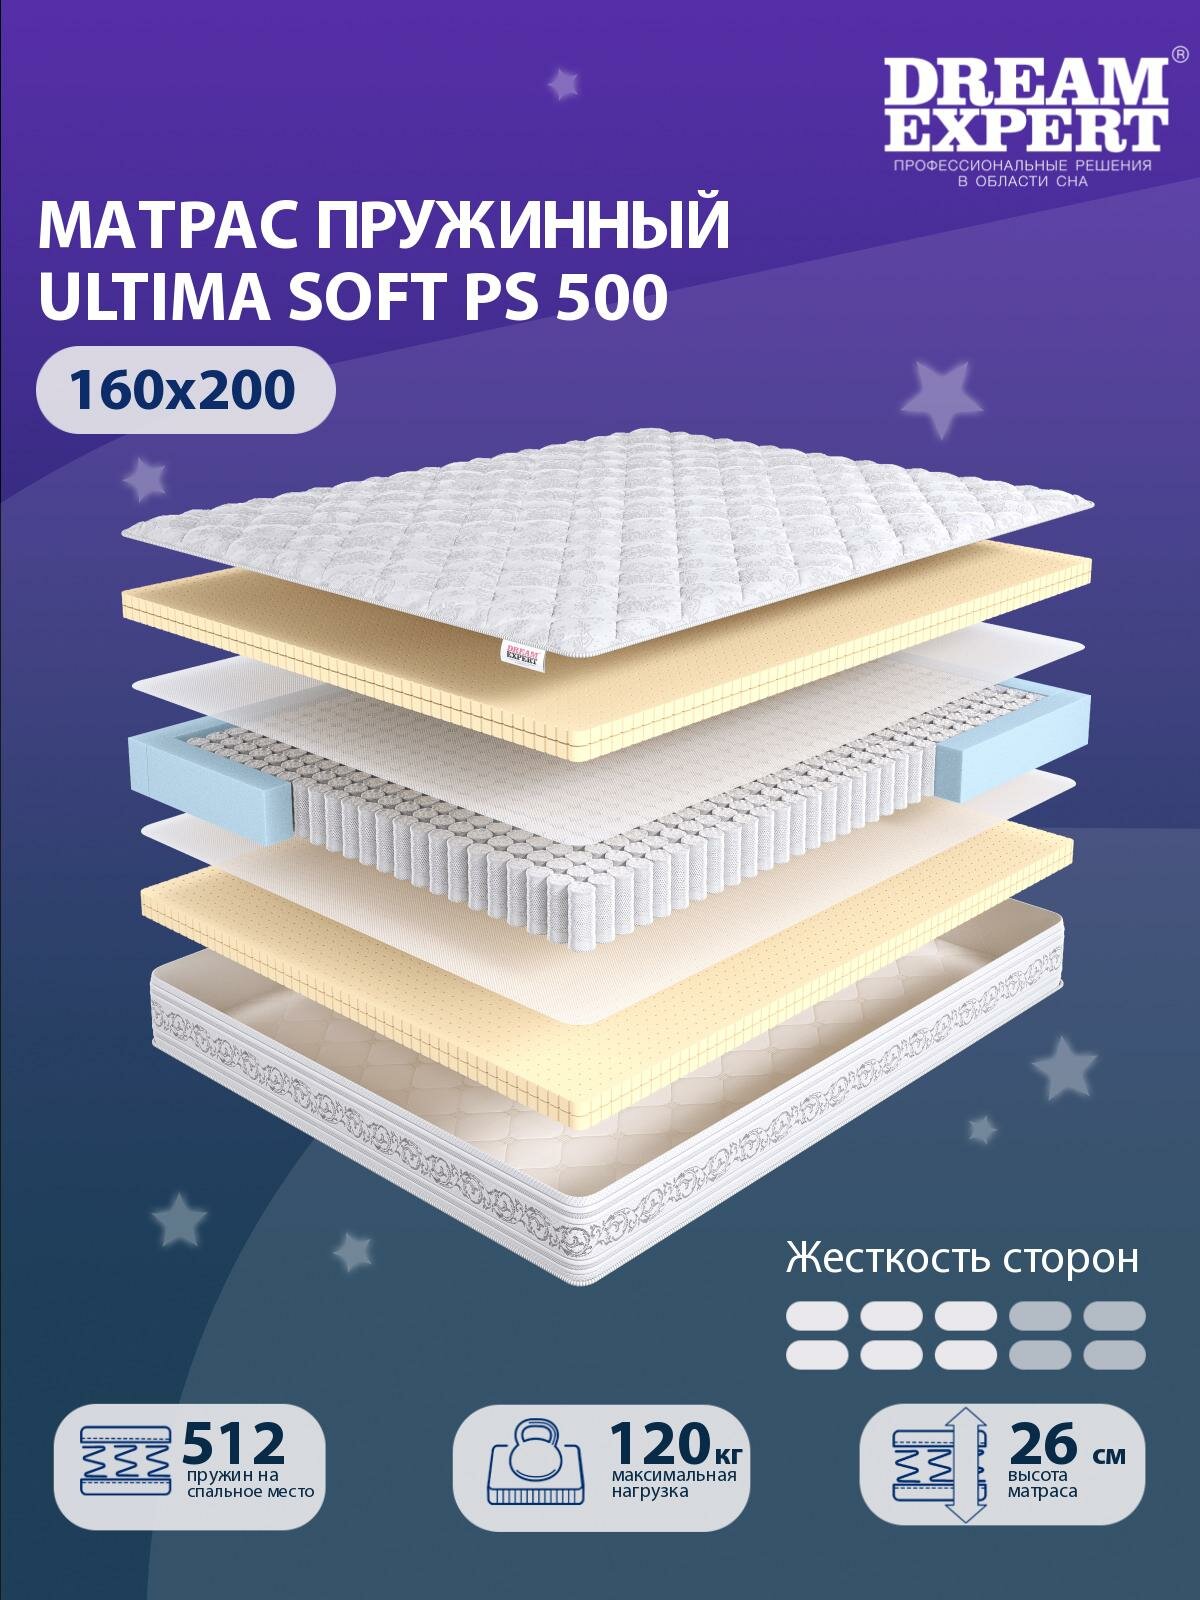 Матрас DreamExpert Ultima Soft PS500 средней жесткости, двуспальный, независимый пружинный блок, на кровать 160x200